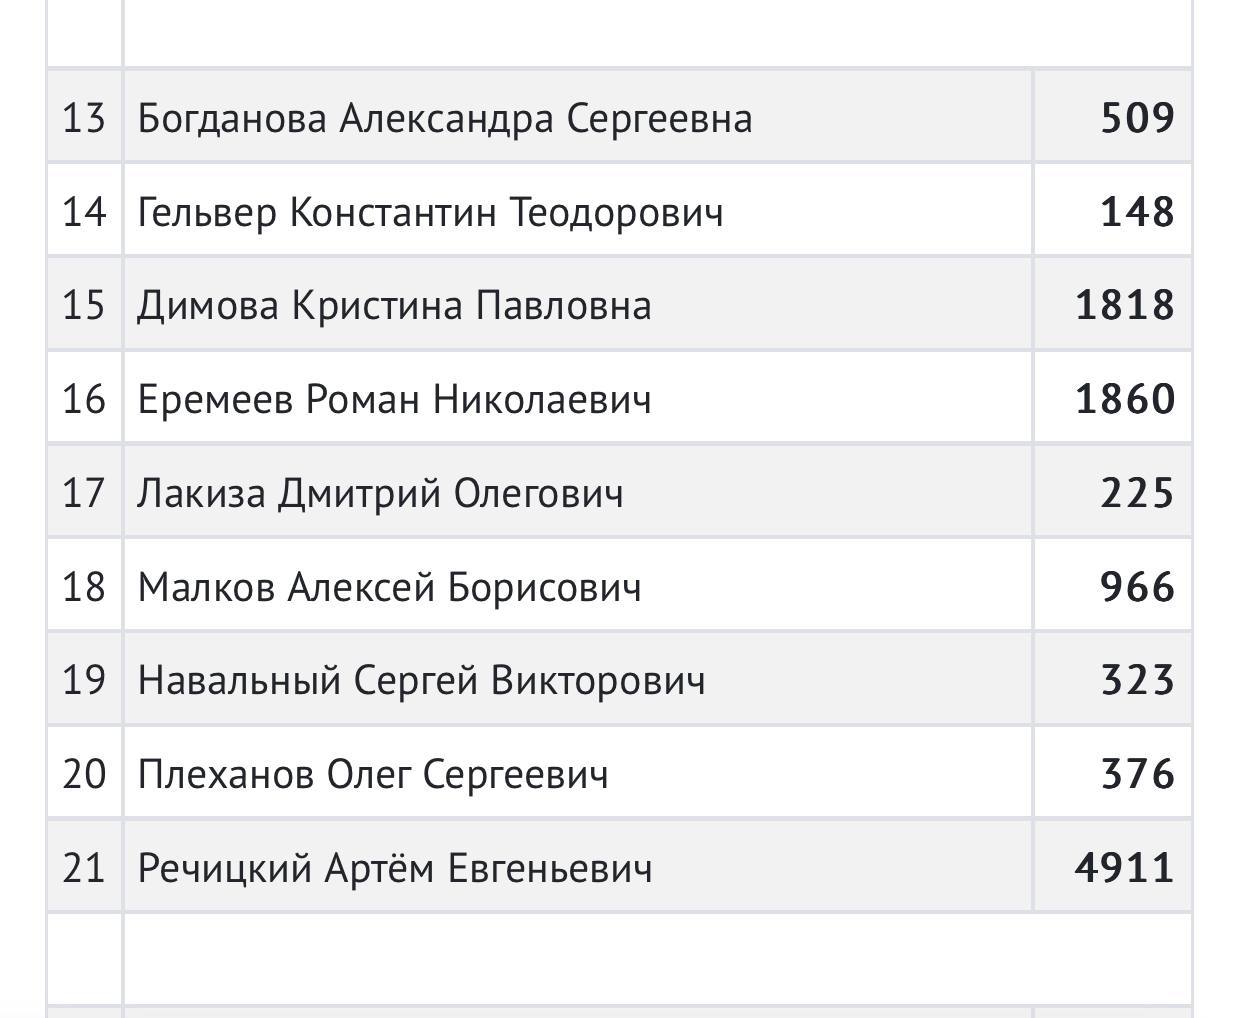 Кто выиграл выборы в красноярском крае